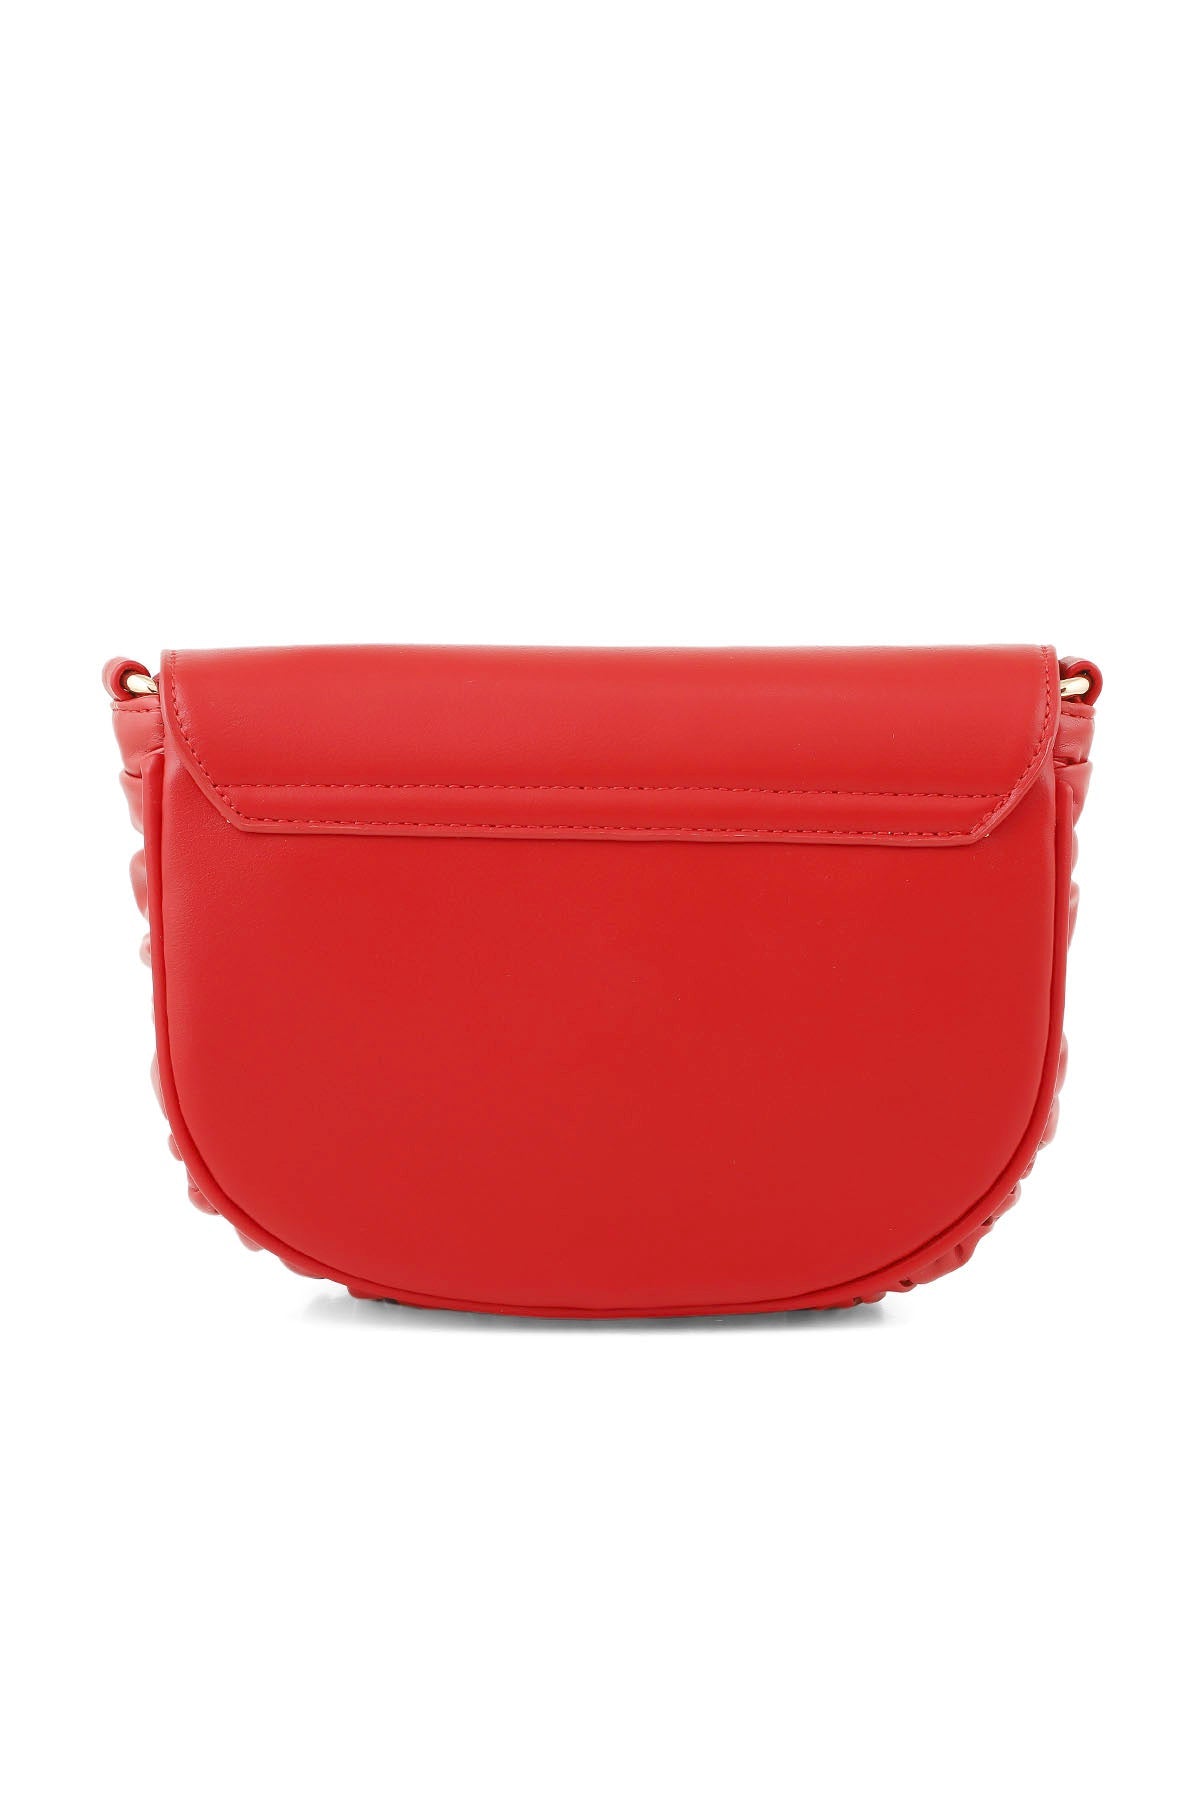 Saddle Shoulder Bags B15008-Red